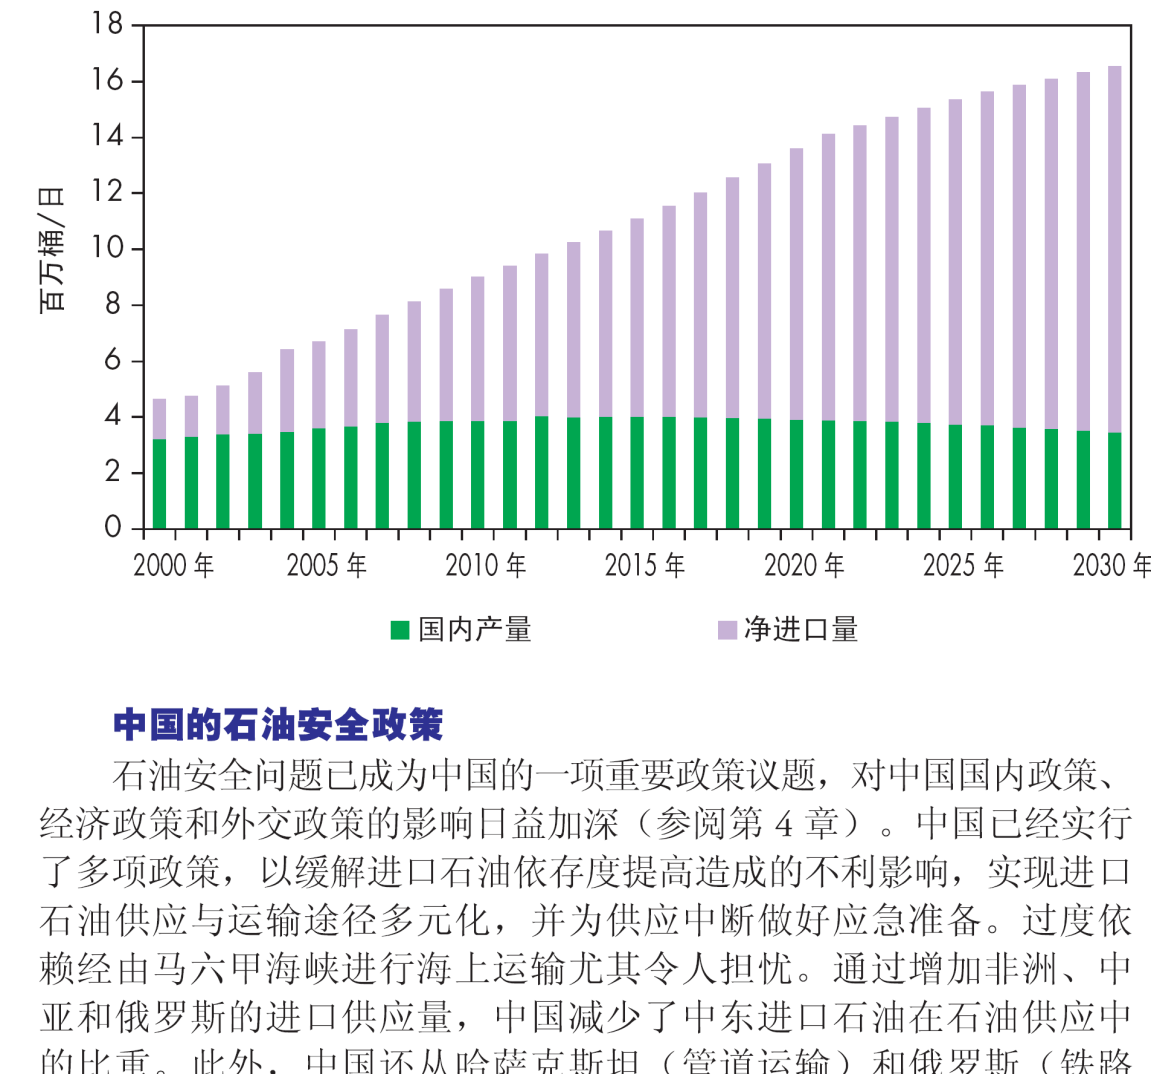 北 京 洲 通 投 资 技 术 研 究 所 图 21 2006 年 中 国 从 各 产 地 进 口 的 原 油 量 IEA 预 测 由 于 需 求 量 迅 速 超 过 产 量, 中 国 的 石 油 净 进 口 量 预 计 将 在 2010 年 猛 增 至 510 万 桶 / 日, 2015 年 和 2030 年 将 分 别 增 至 710 万 桶 / 日 和 1310 万 桶 / 日 到